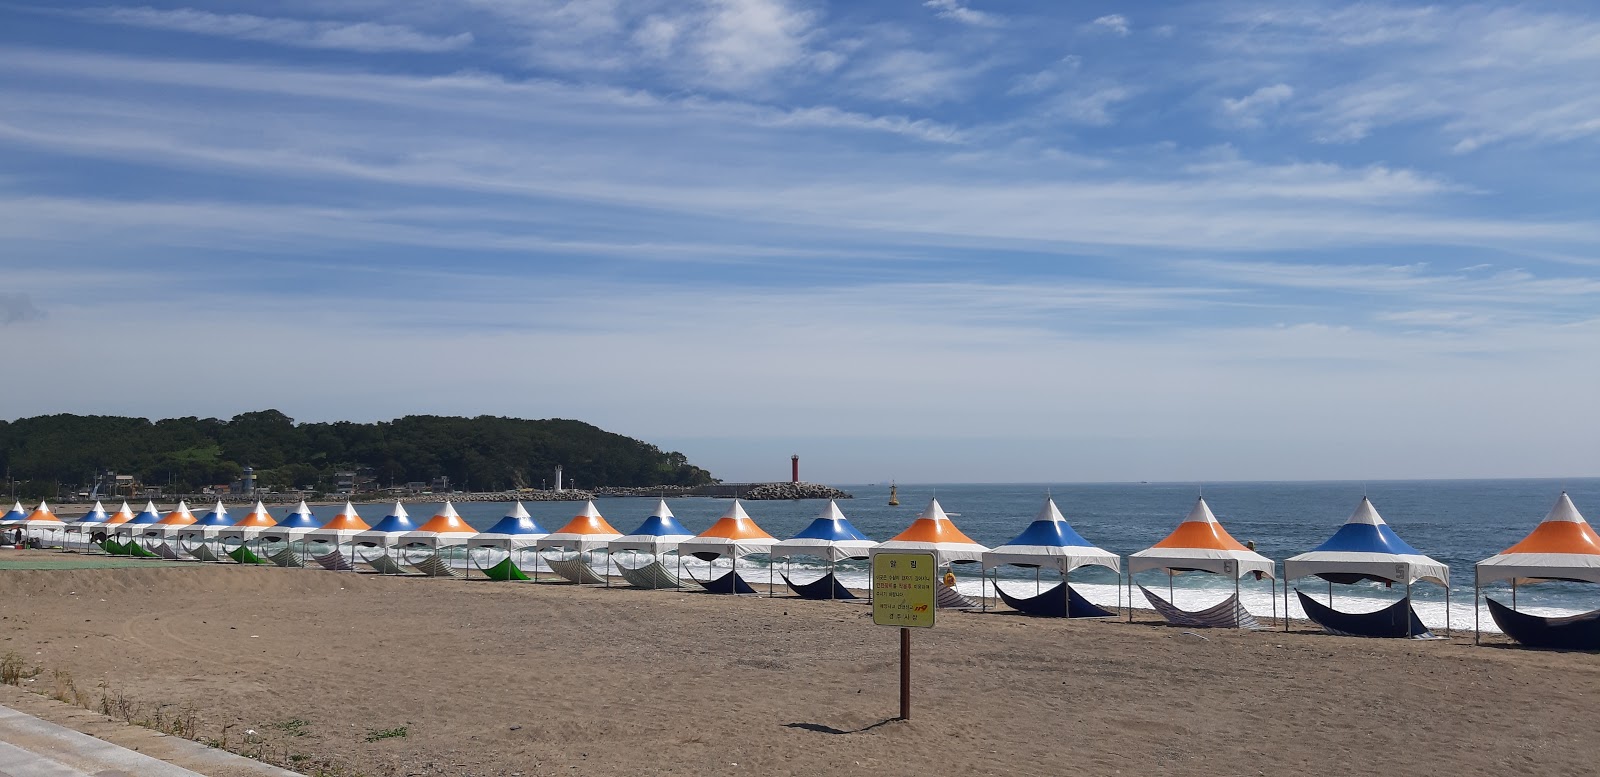 Zdjęcie Najeong Beach - popularne miejsce wśród znawców relaksu